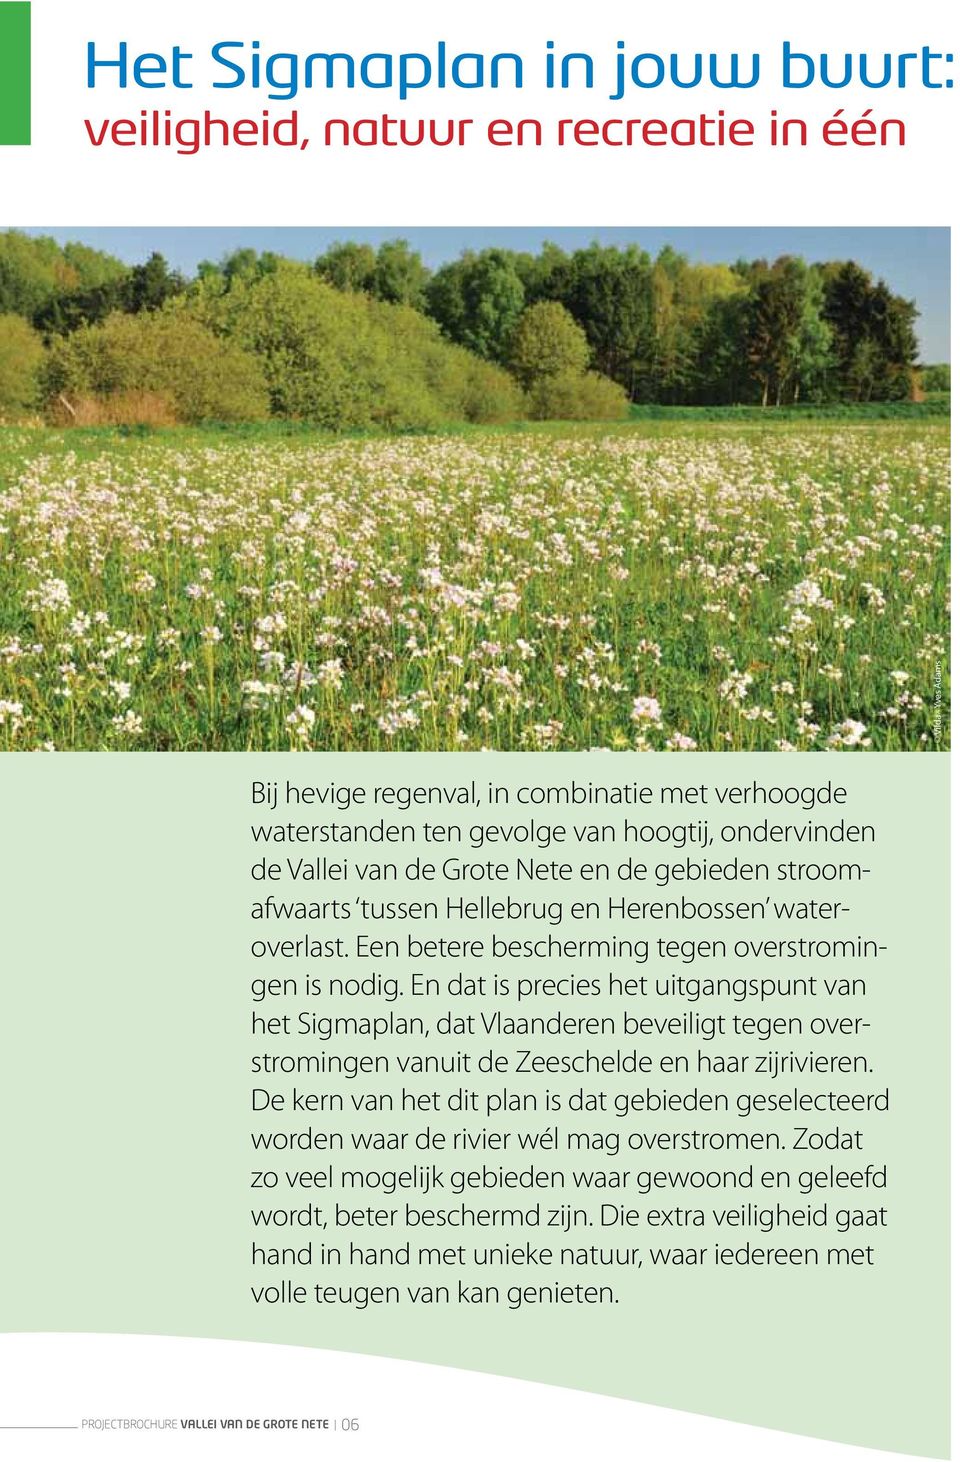 En dat is precies uitgangspunt Sigmaplan, dat Vlaanren beveiligt gen overstromingen uit Zeeschel en haar zijrivieren.